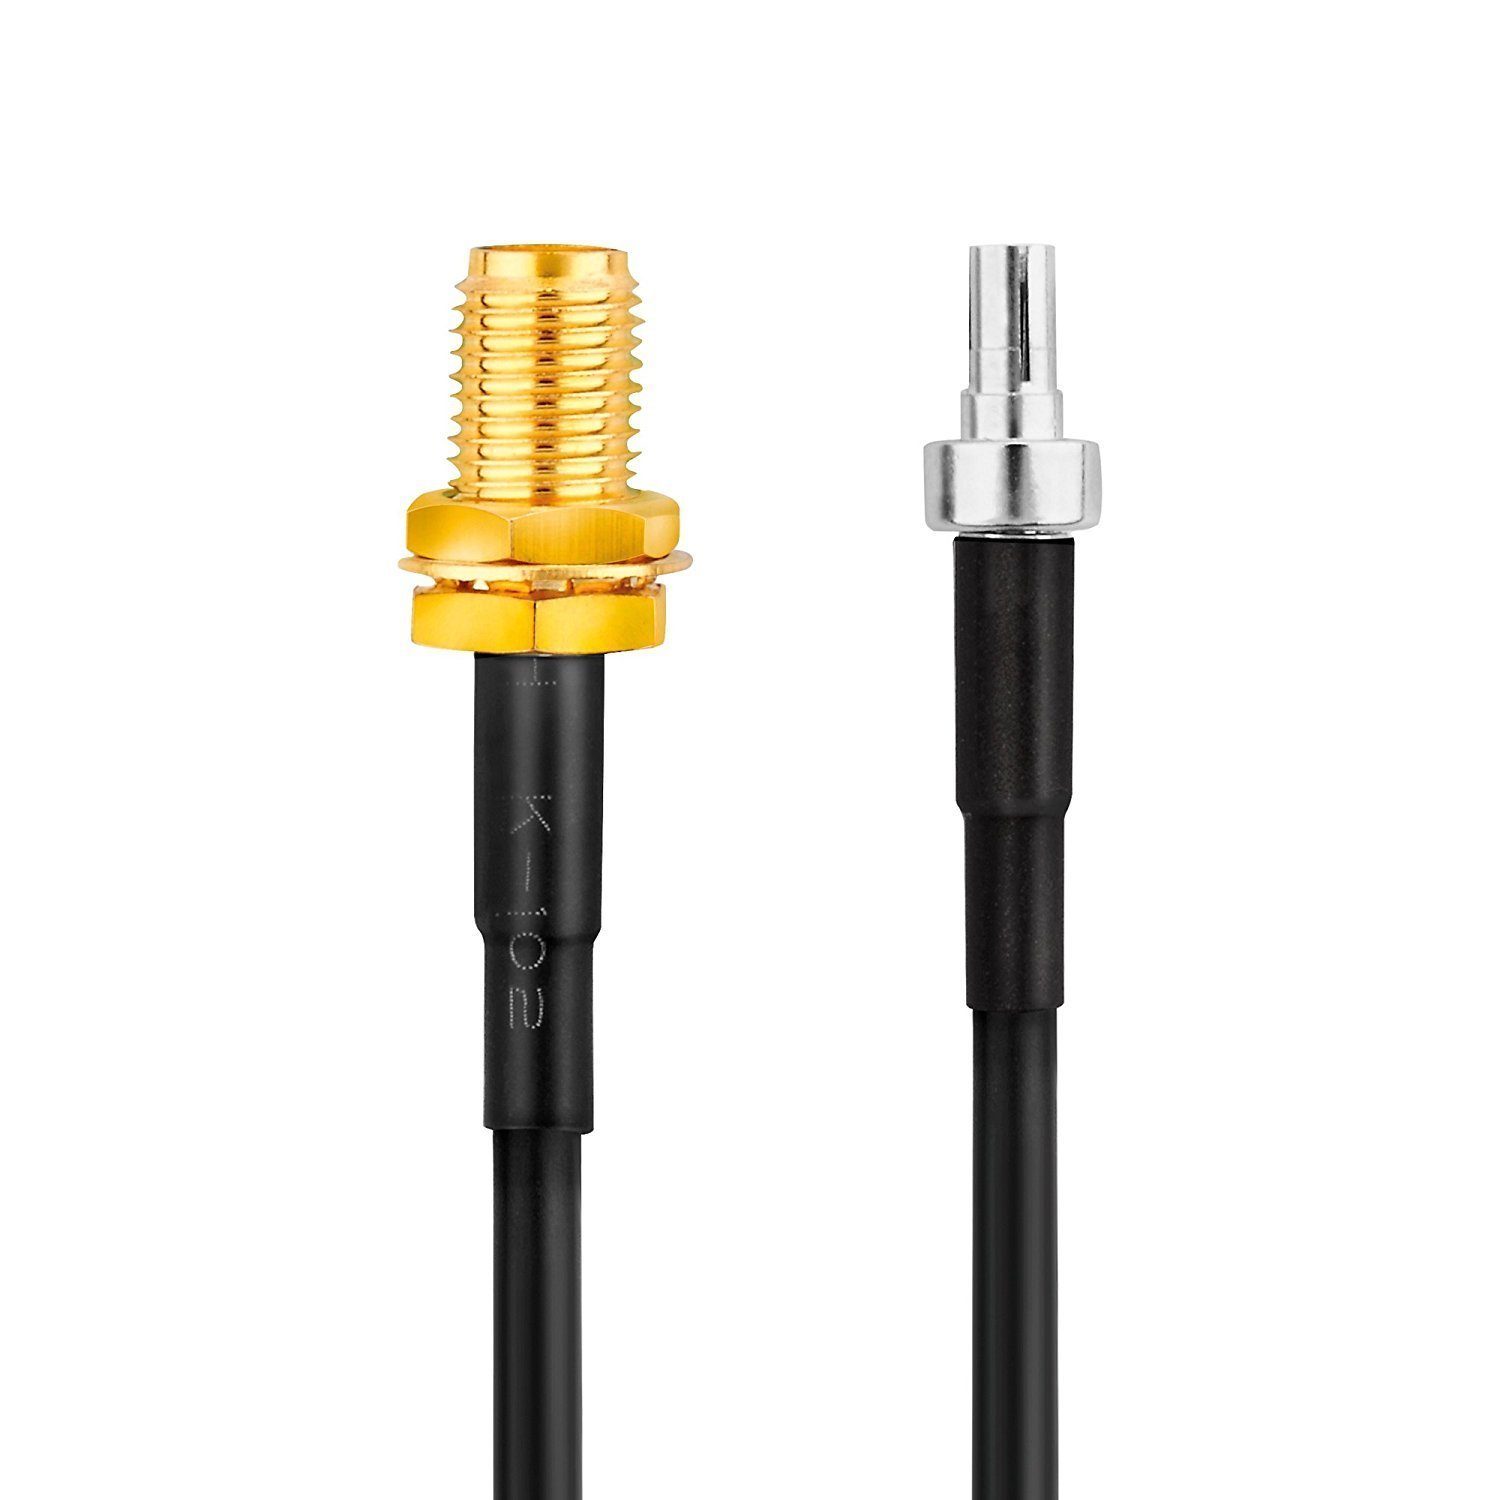 / CRC9-Stecker SAT-Kabel 20 Anten cm Pigtail gerade für Adapter-Kabel conecto SMA-Buchse